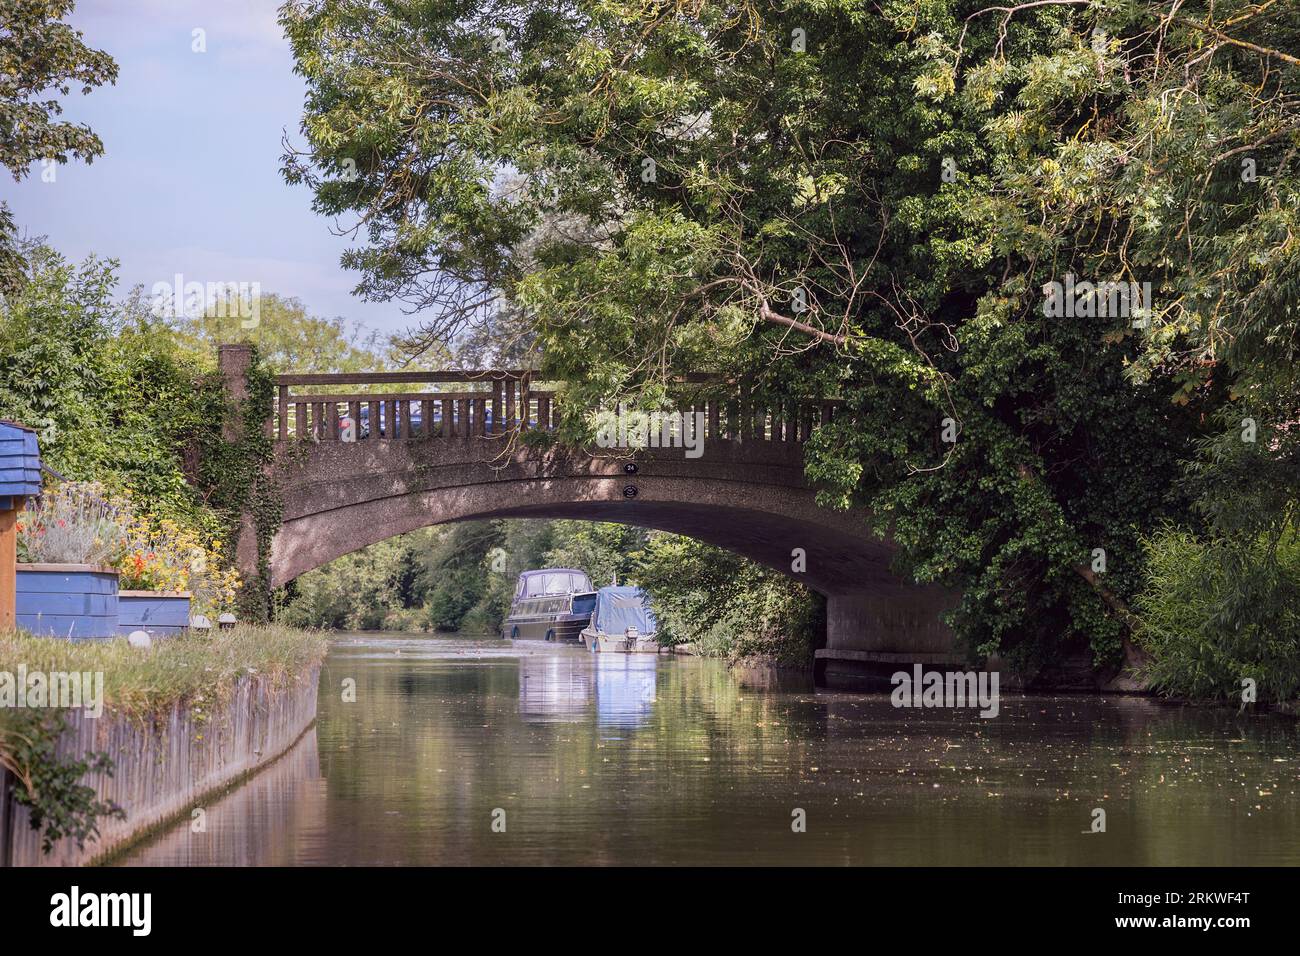 Deux petits bateaux attachés à la rive de la rivière Stort juste après un vieux pont près de Halow Angleterre avec un ciel bleu clair en arrière-plan Banque D'Images